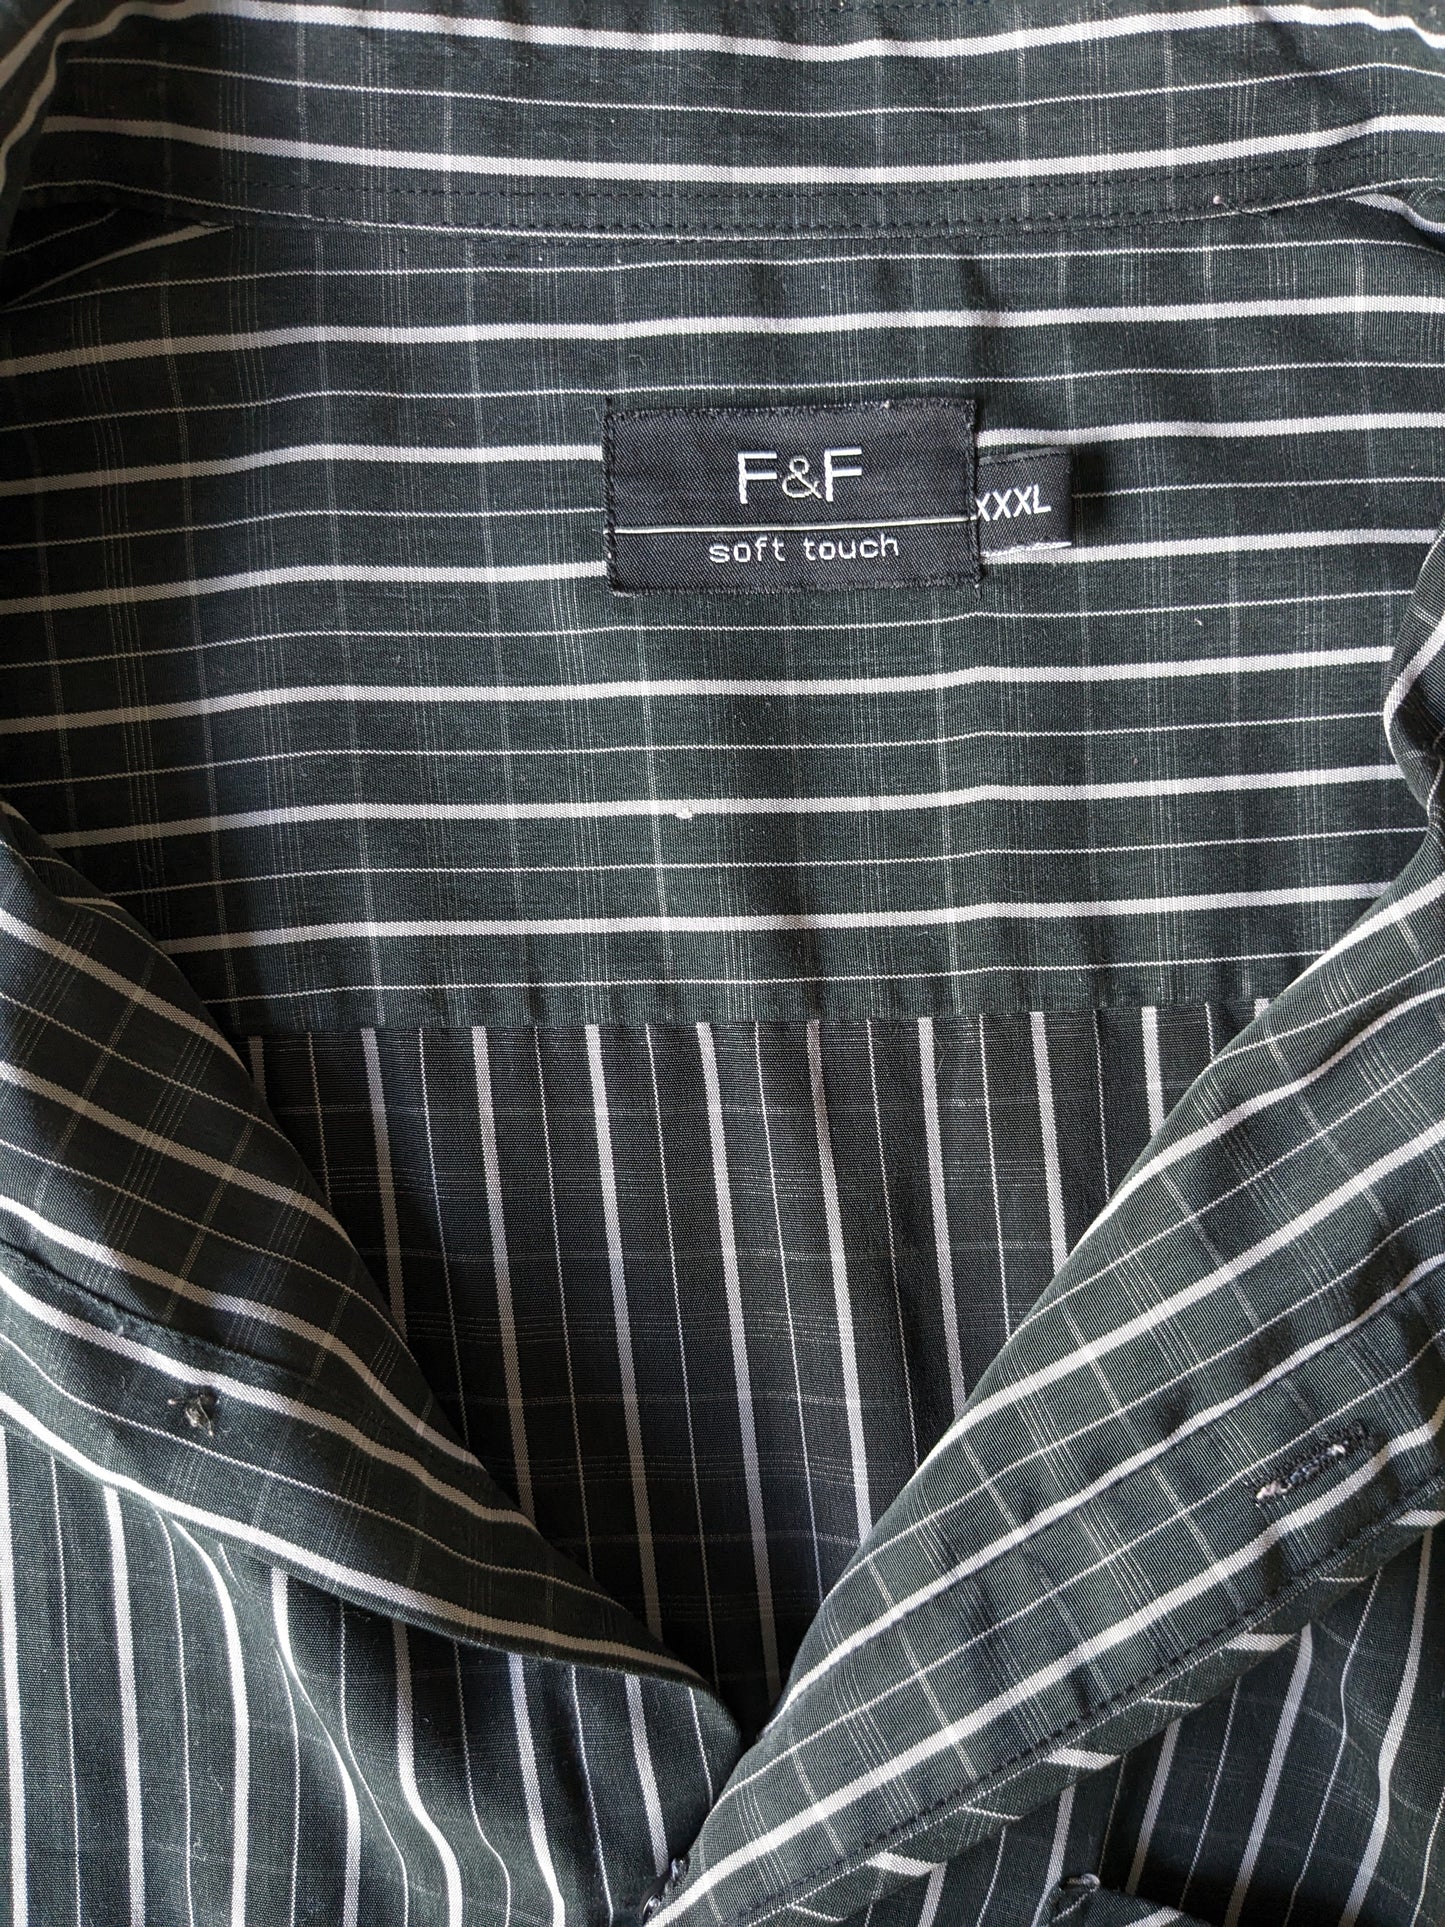 F&F Camisa Manga corta. Negro gris a cuadros. Tamaño XXXL / 3XL.